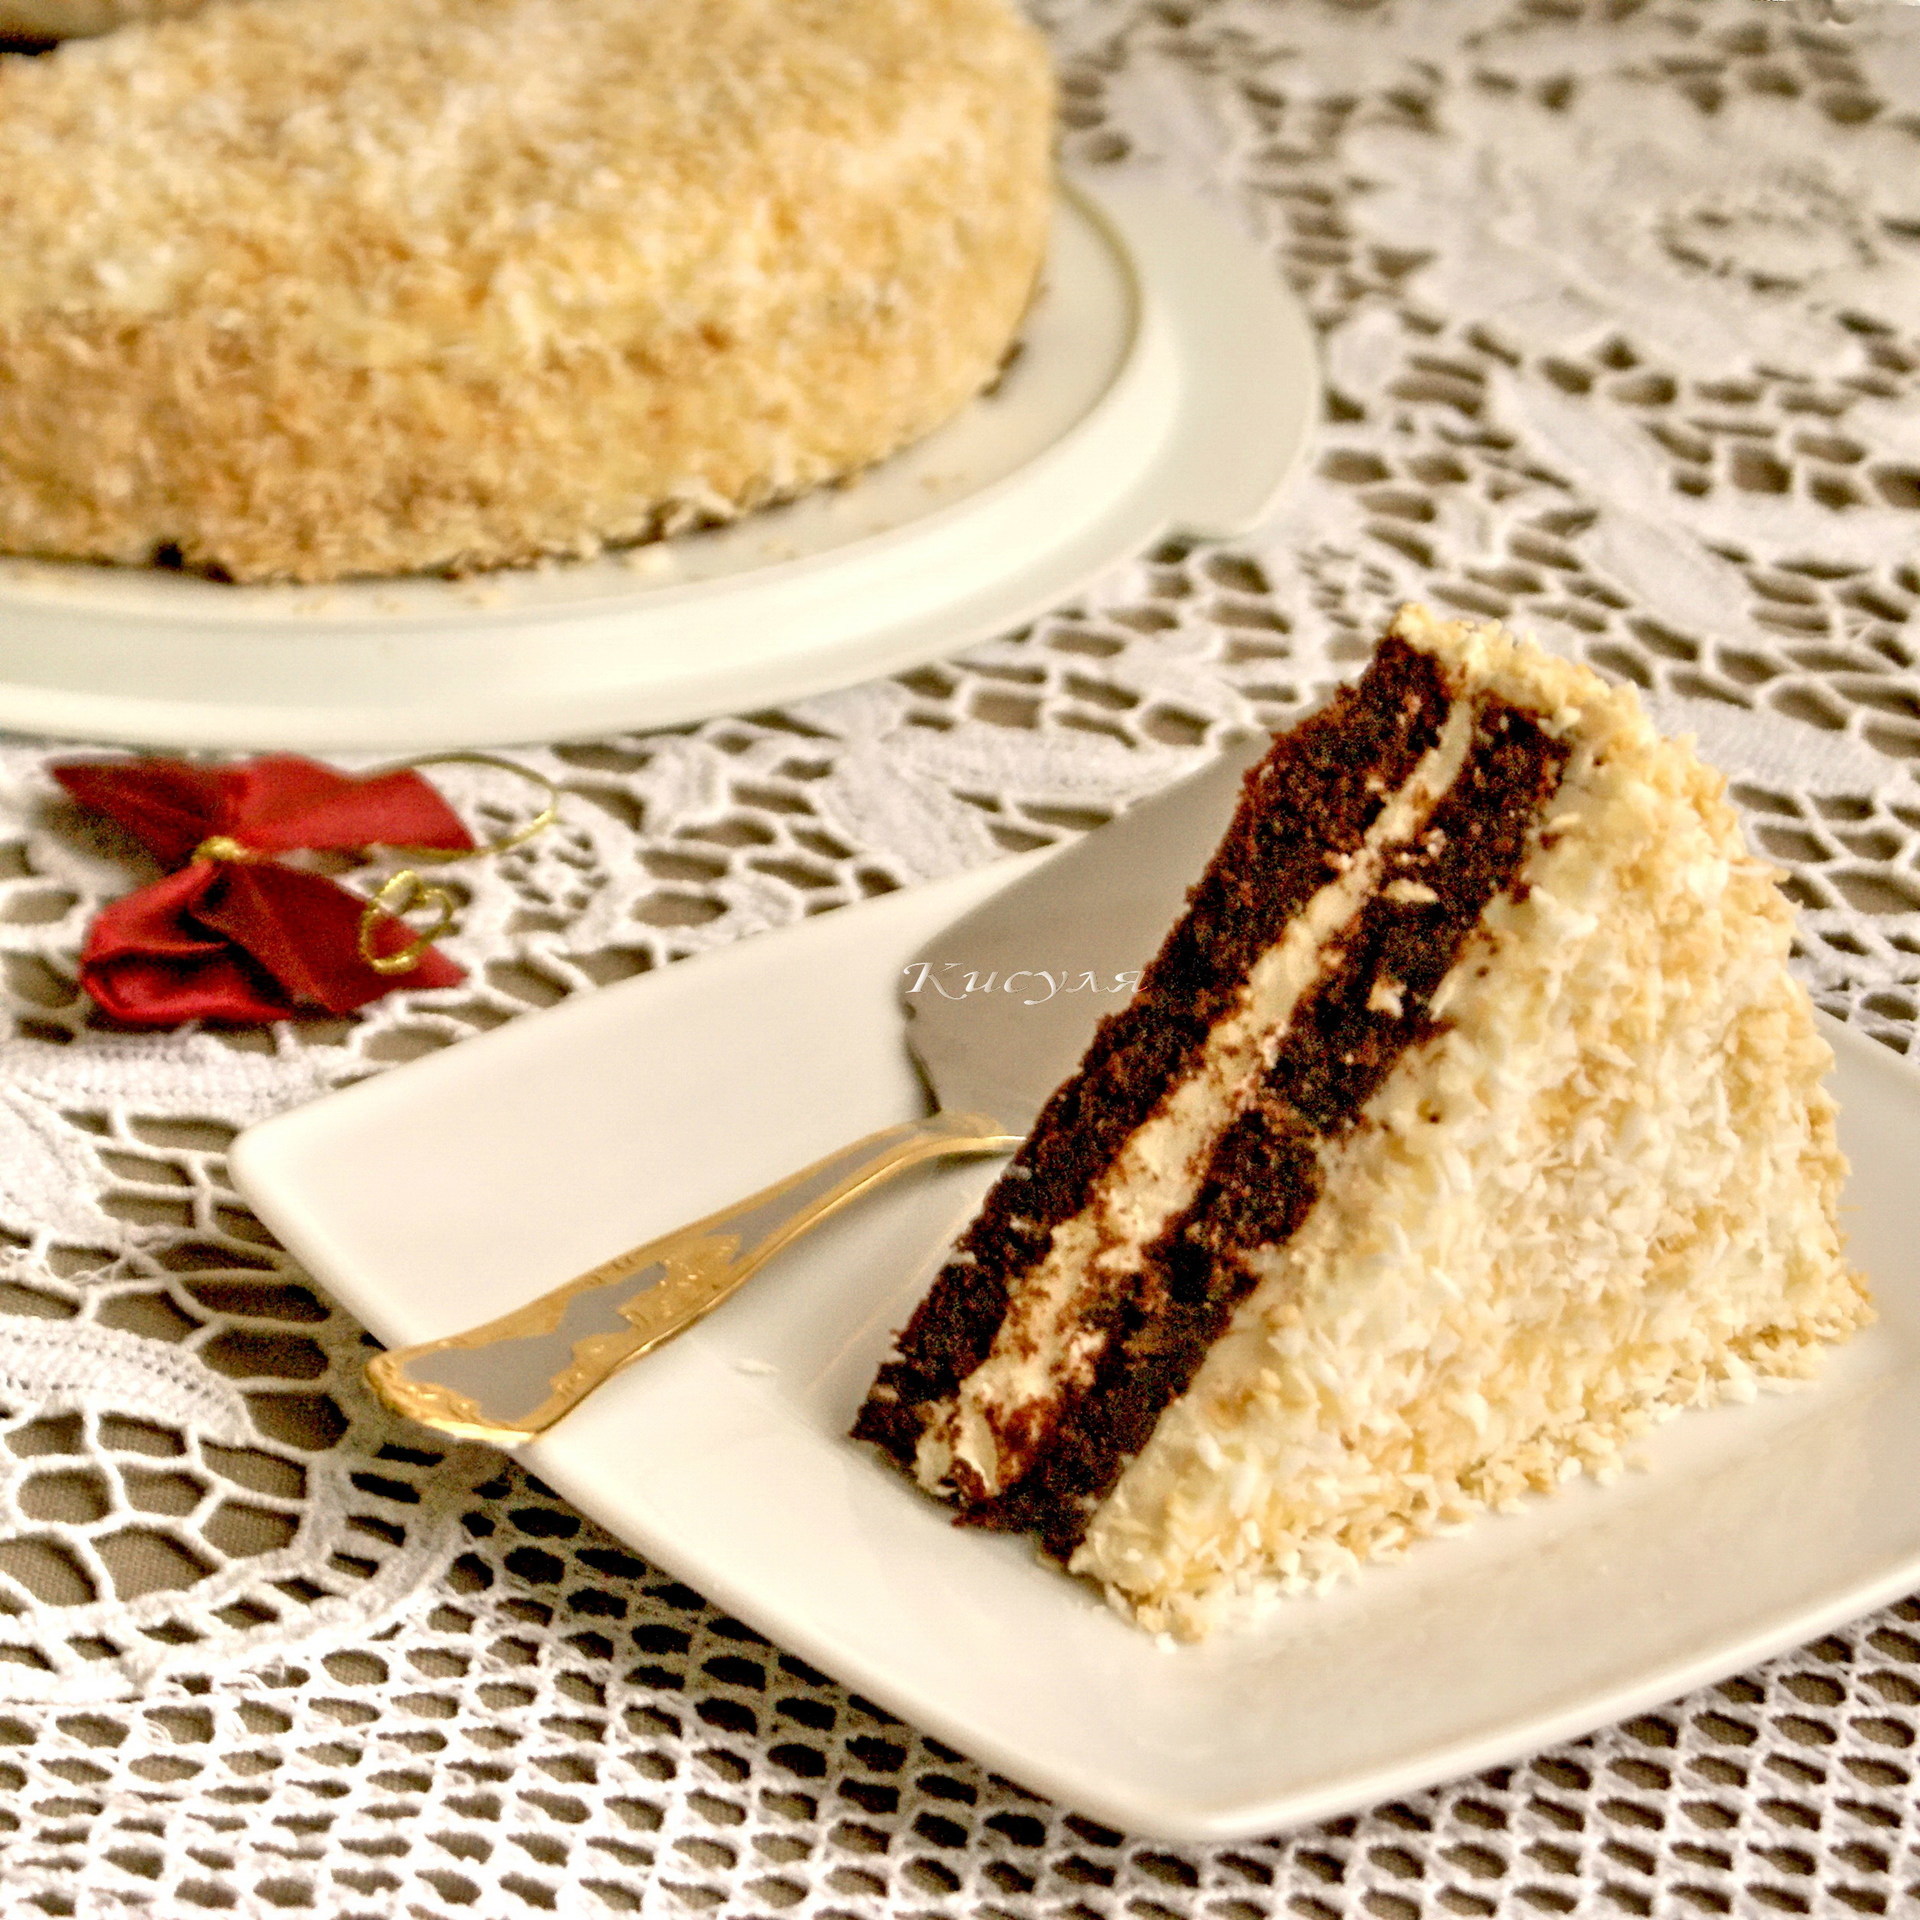 Фото к рецепту: Шоколадный торт с миндальной глазурью и кокосом